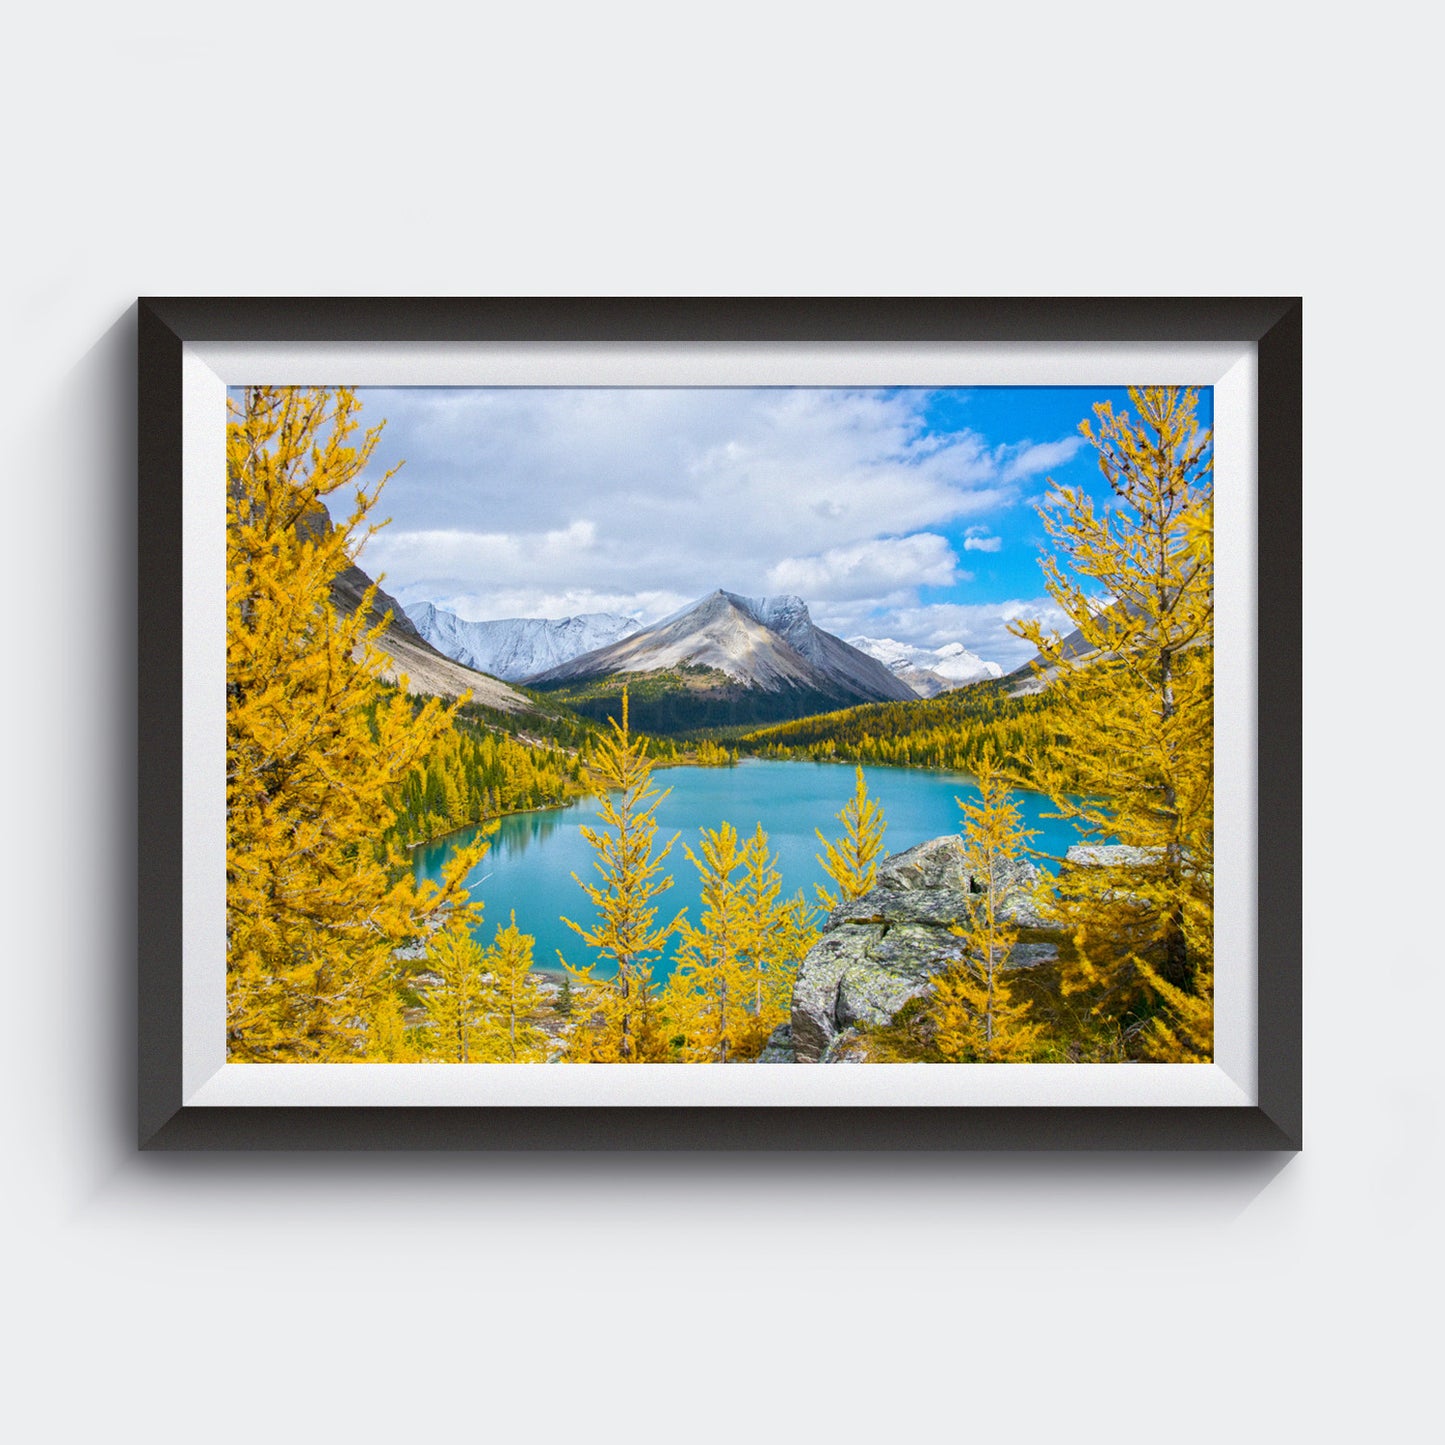 Parque Nacional Banff<br> Canadá<br> Archivo de edición limitada <br>Impresión cromogénica de bellas artes